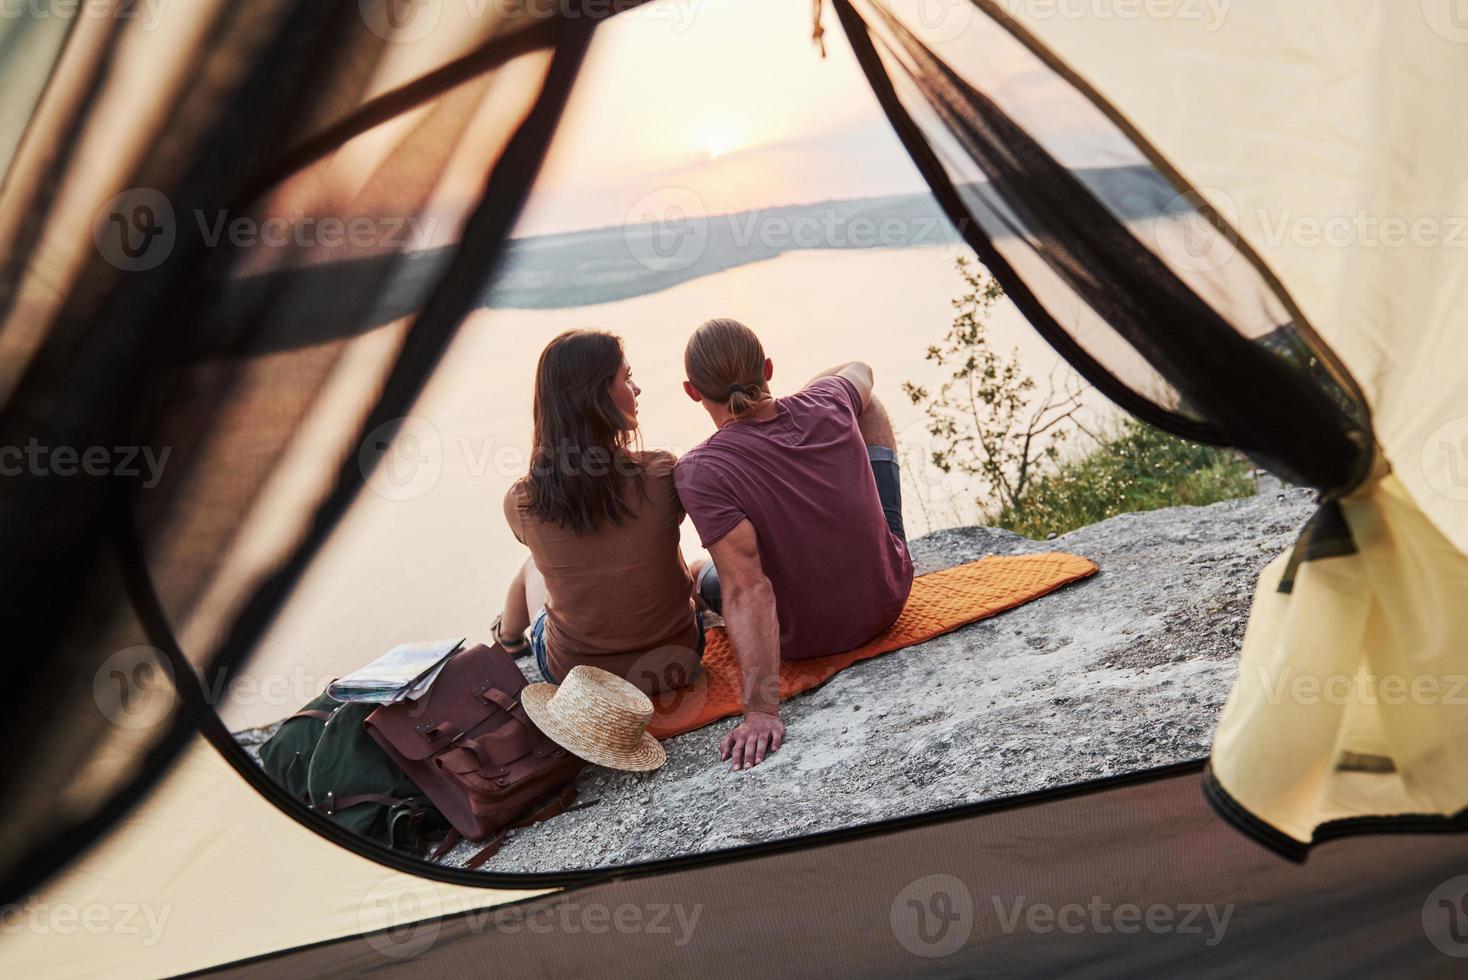 foto av lyckligt par som sitter i tält med utsikt över sjön under vandringstur. resa livsstil äventyr semester koncept